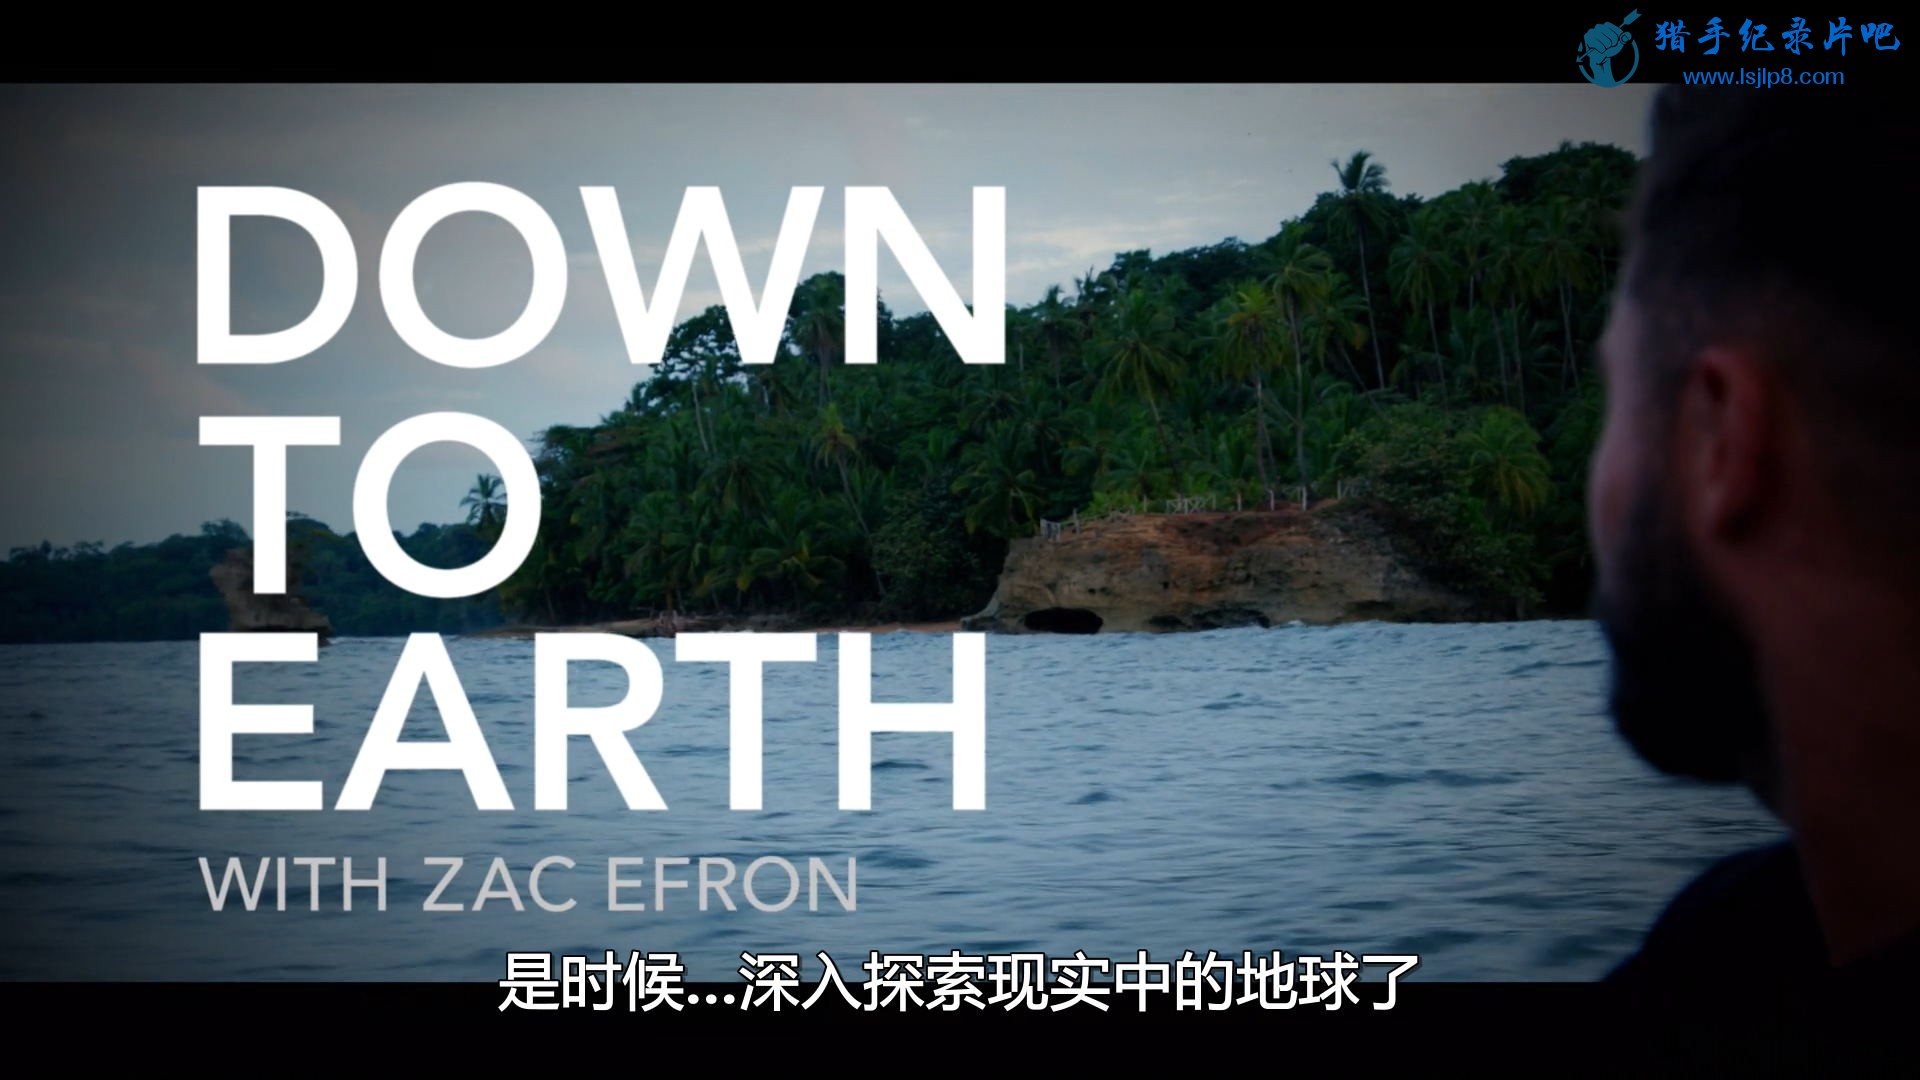 Down.To.Earth.With.Zac.Efron.S01E01.1080p.WEB.h264-ASCENDANCE.mkv_20200713_12484.jpg